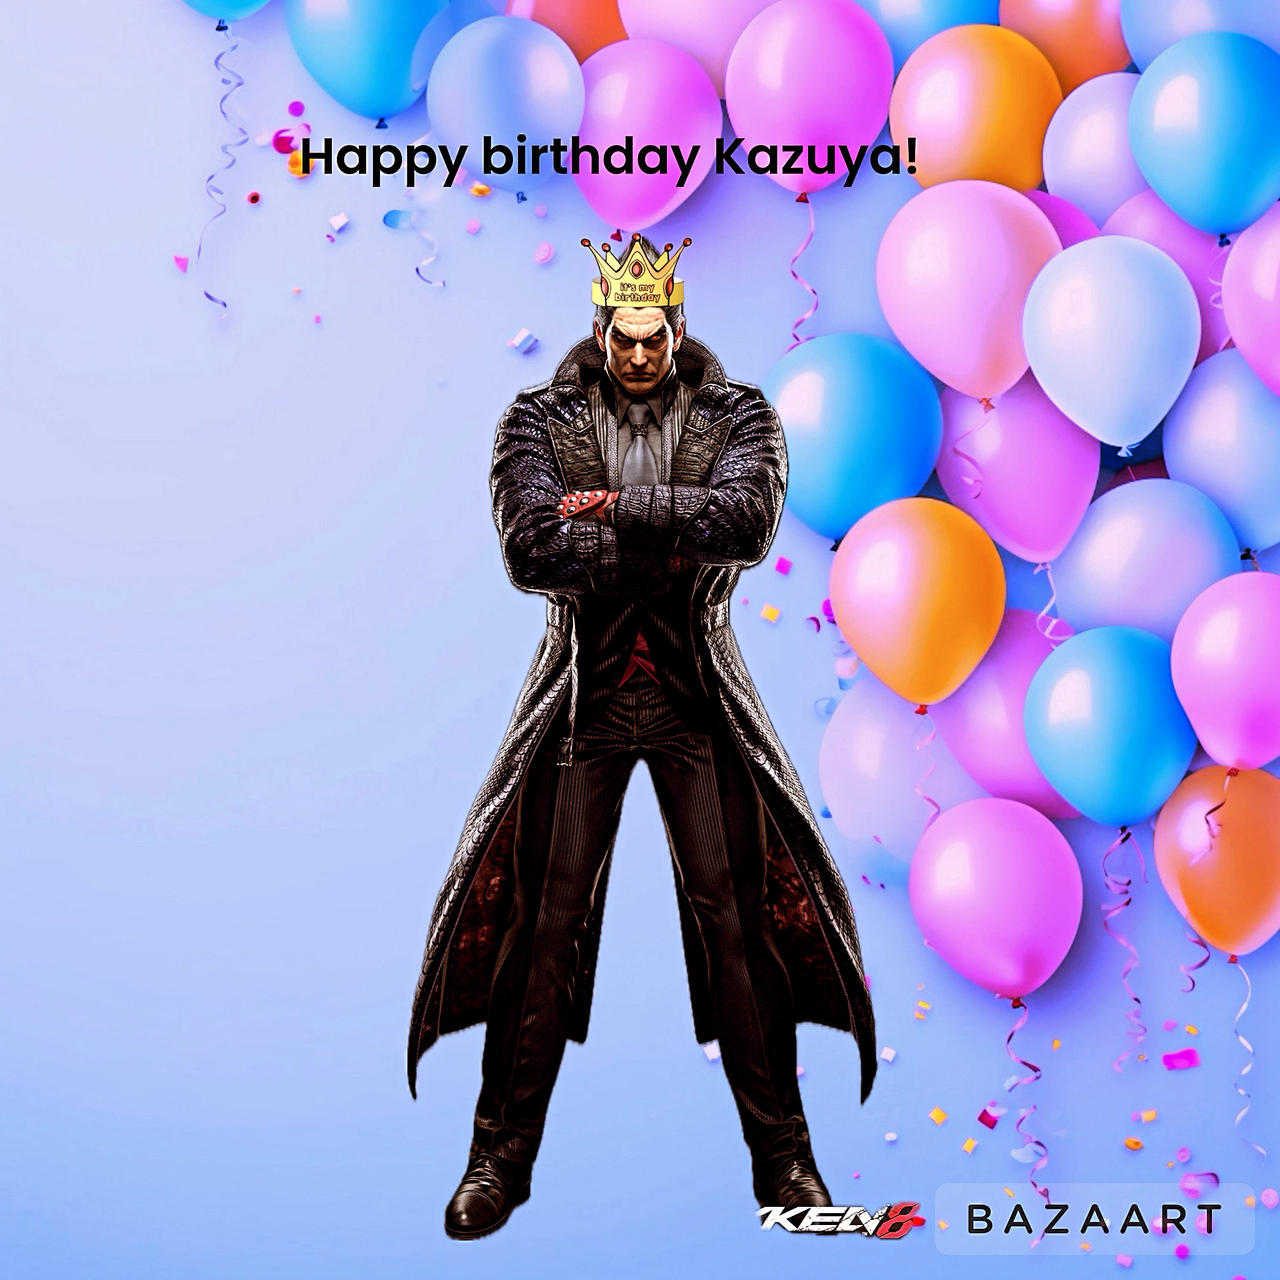 Happy birthday Kazuya! by supertimmyboy32 on DeviantArt